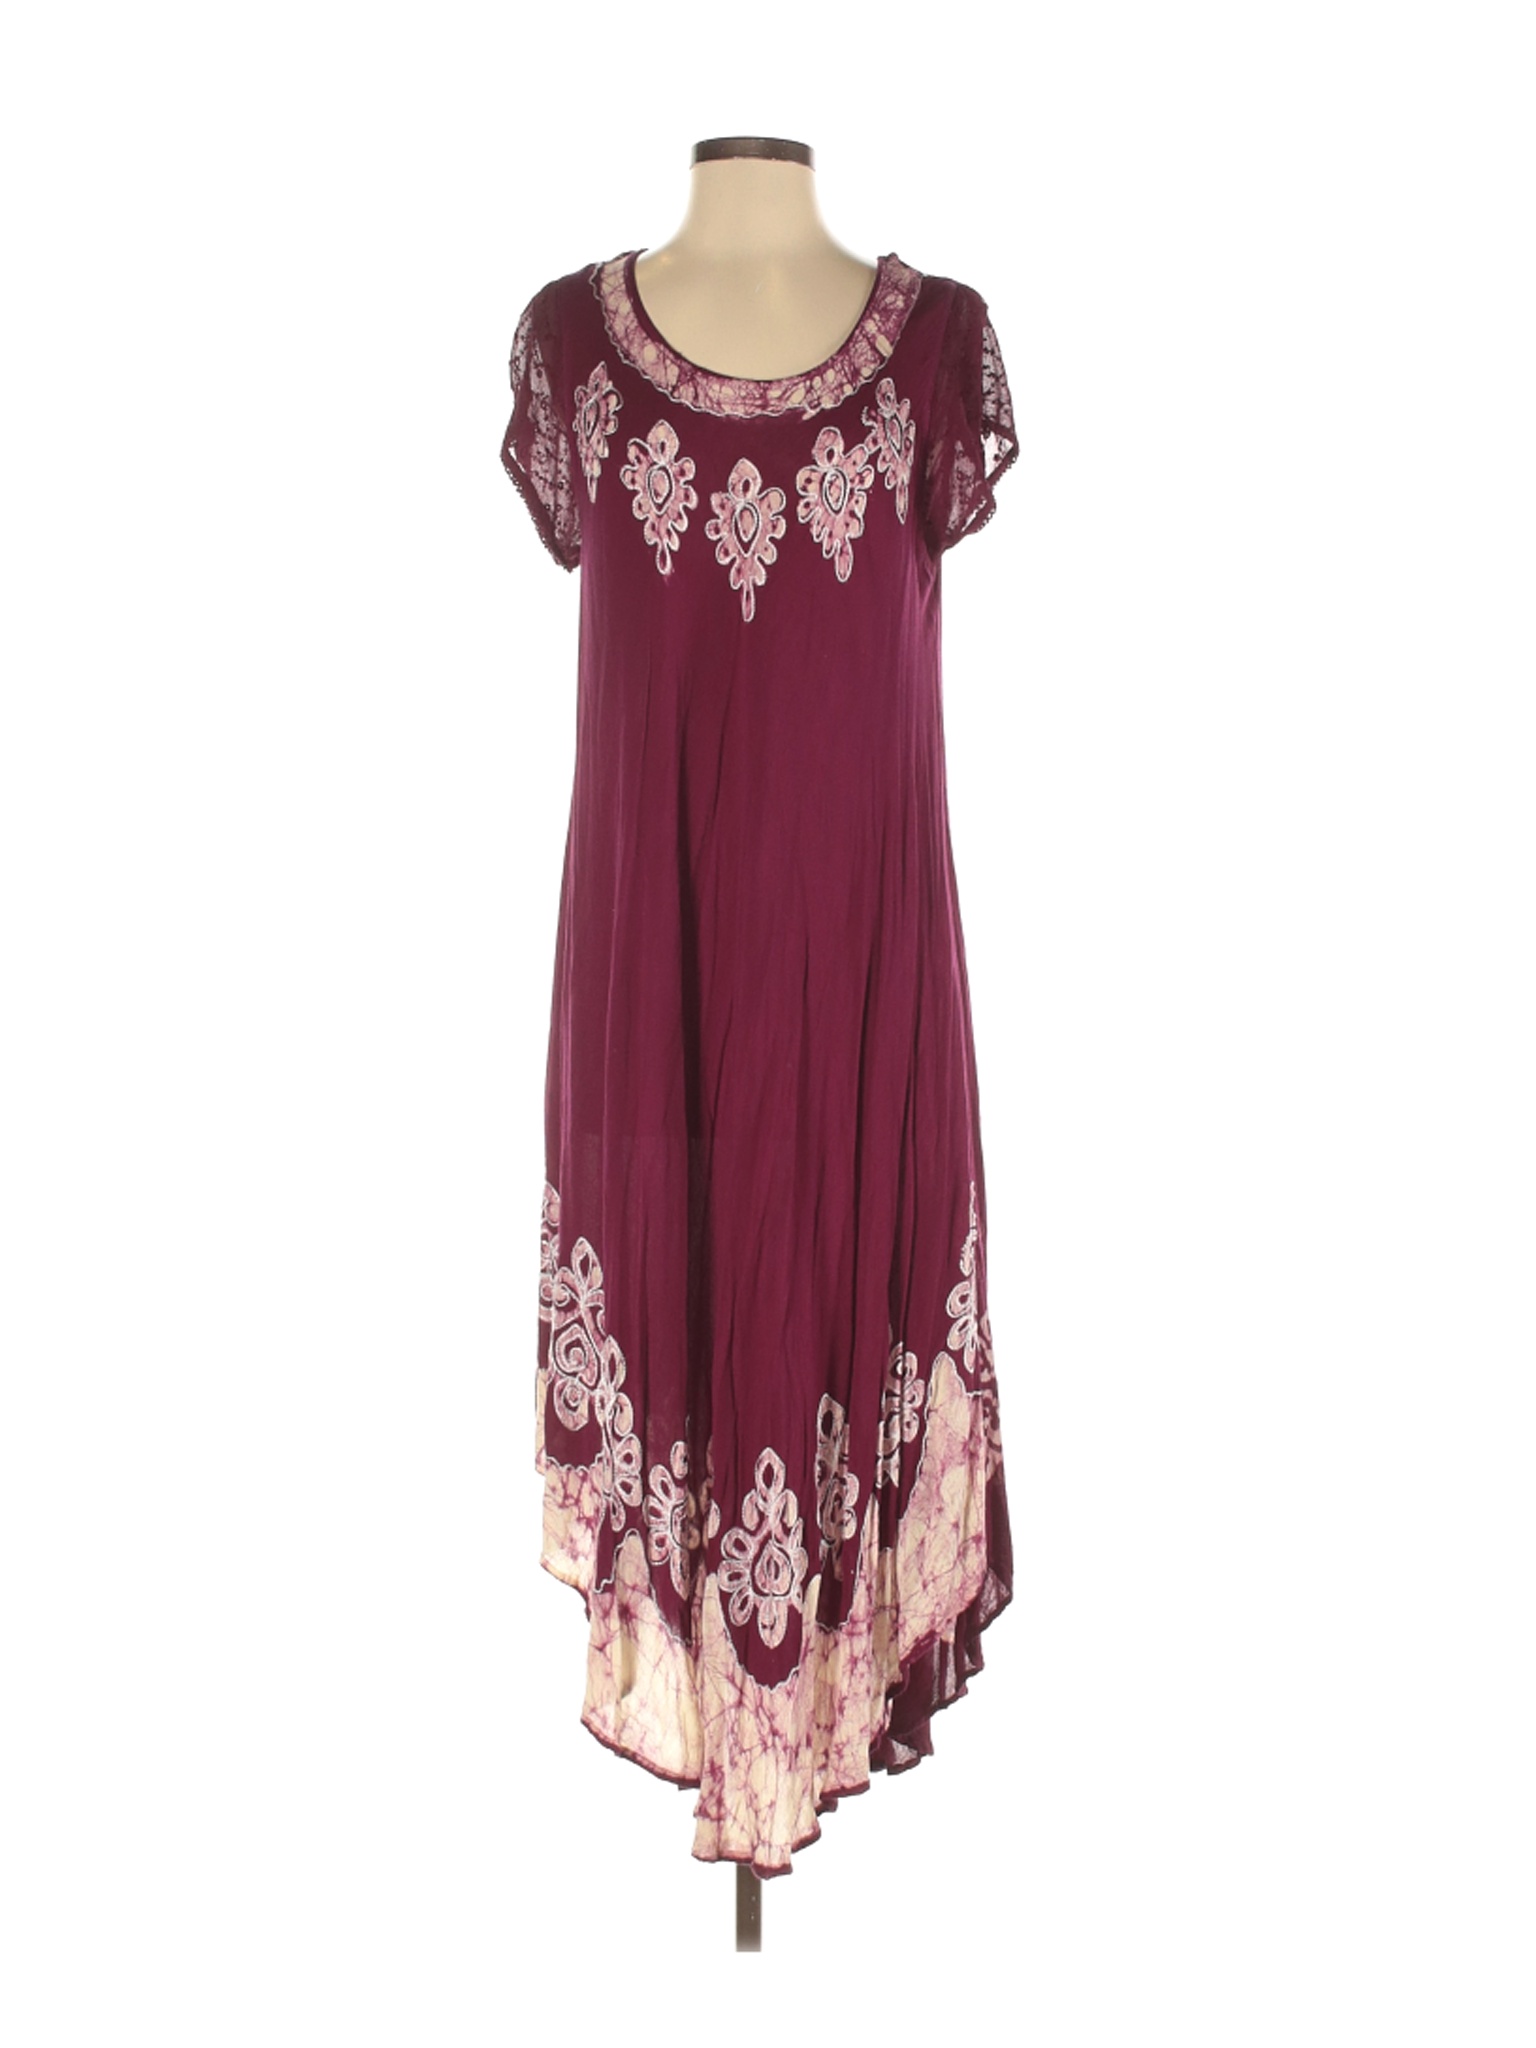 Advance Apparels Women Purple Casual Dress One Size | eBay